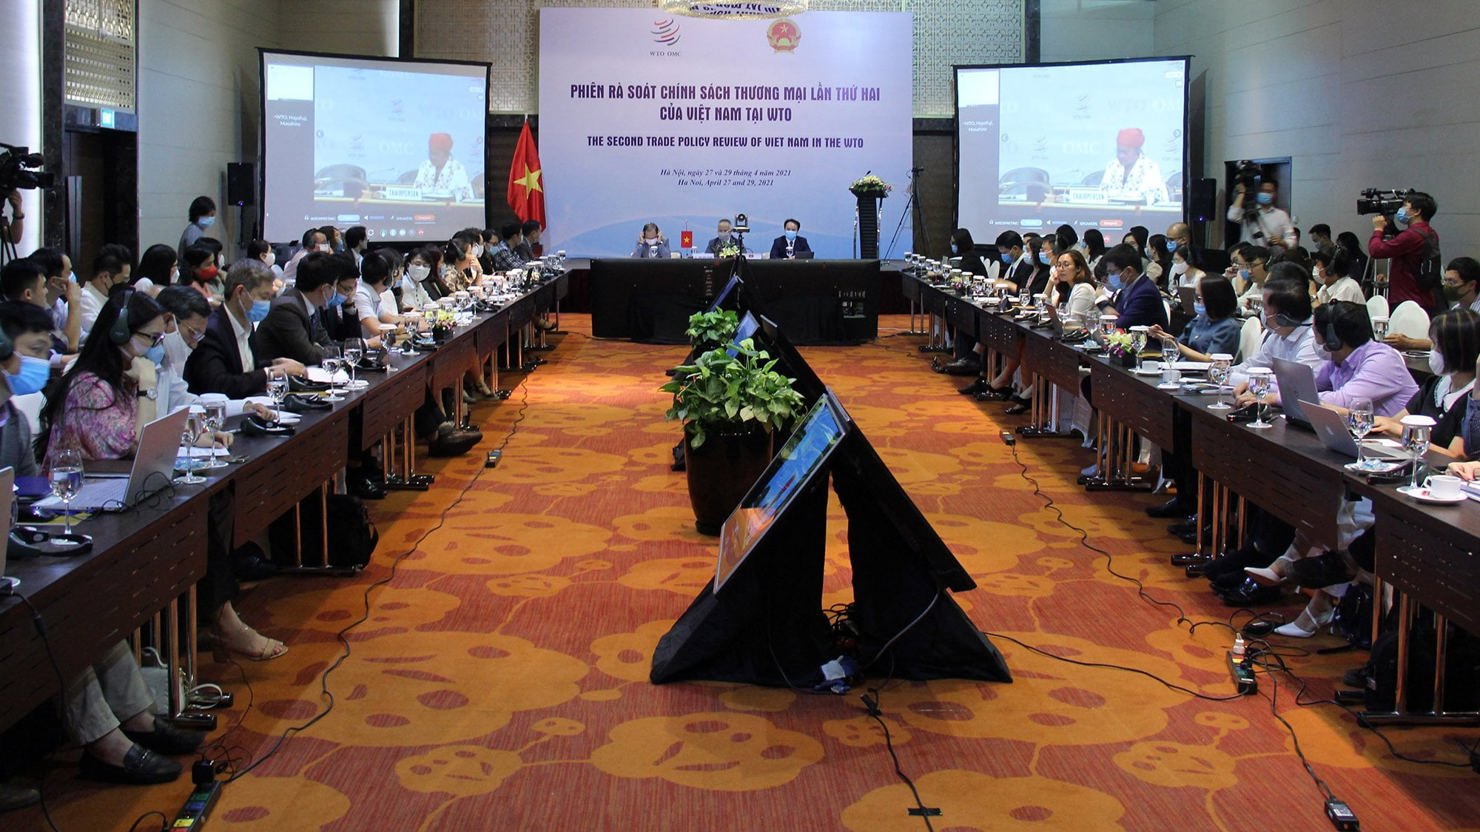 Toàn cảnh phiên rà soát chính sách thương mại lần thứ 2 của Việt Nam tại WTO